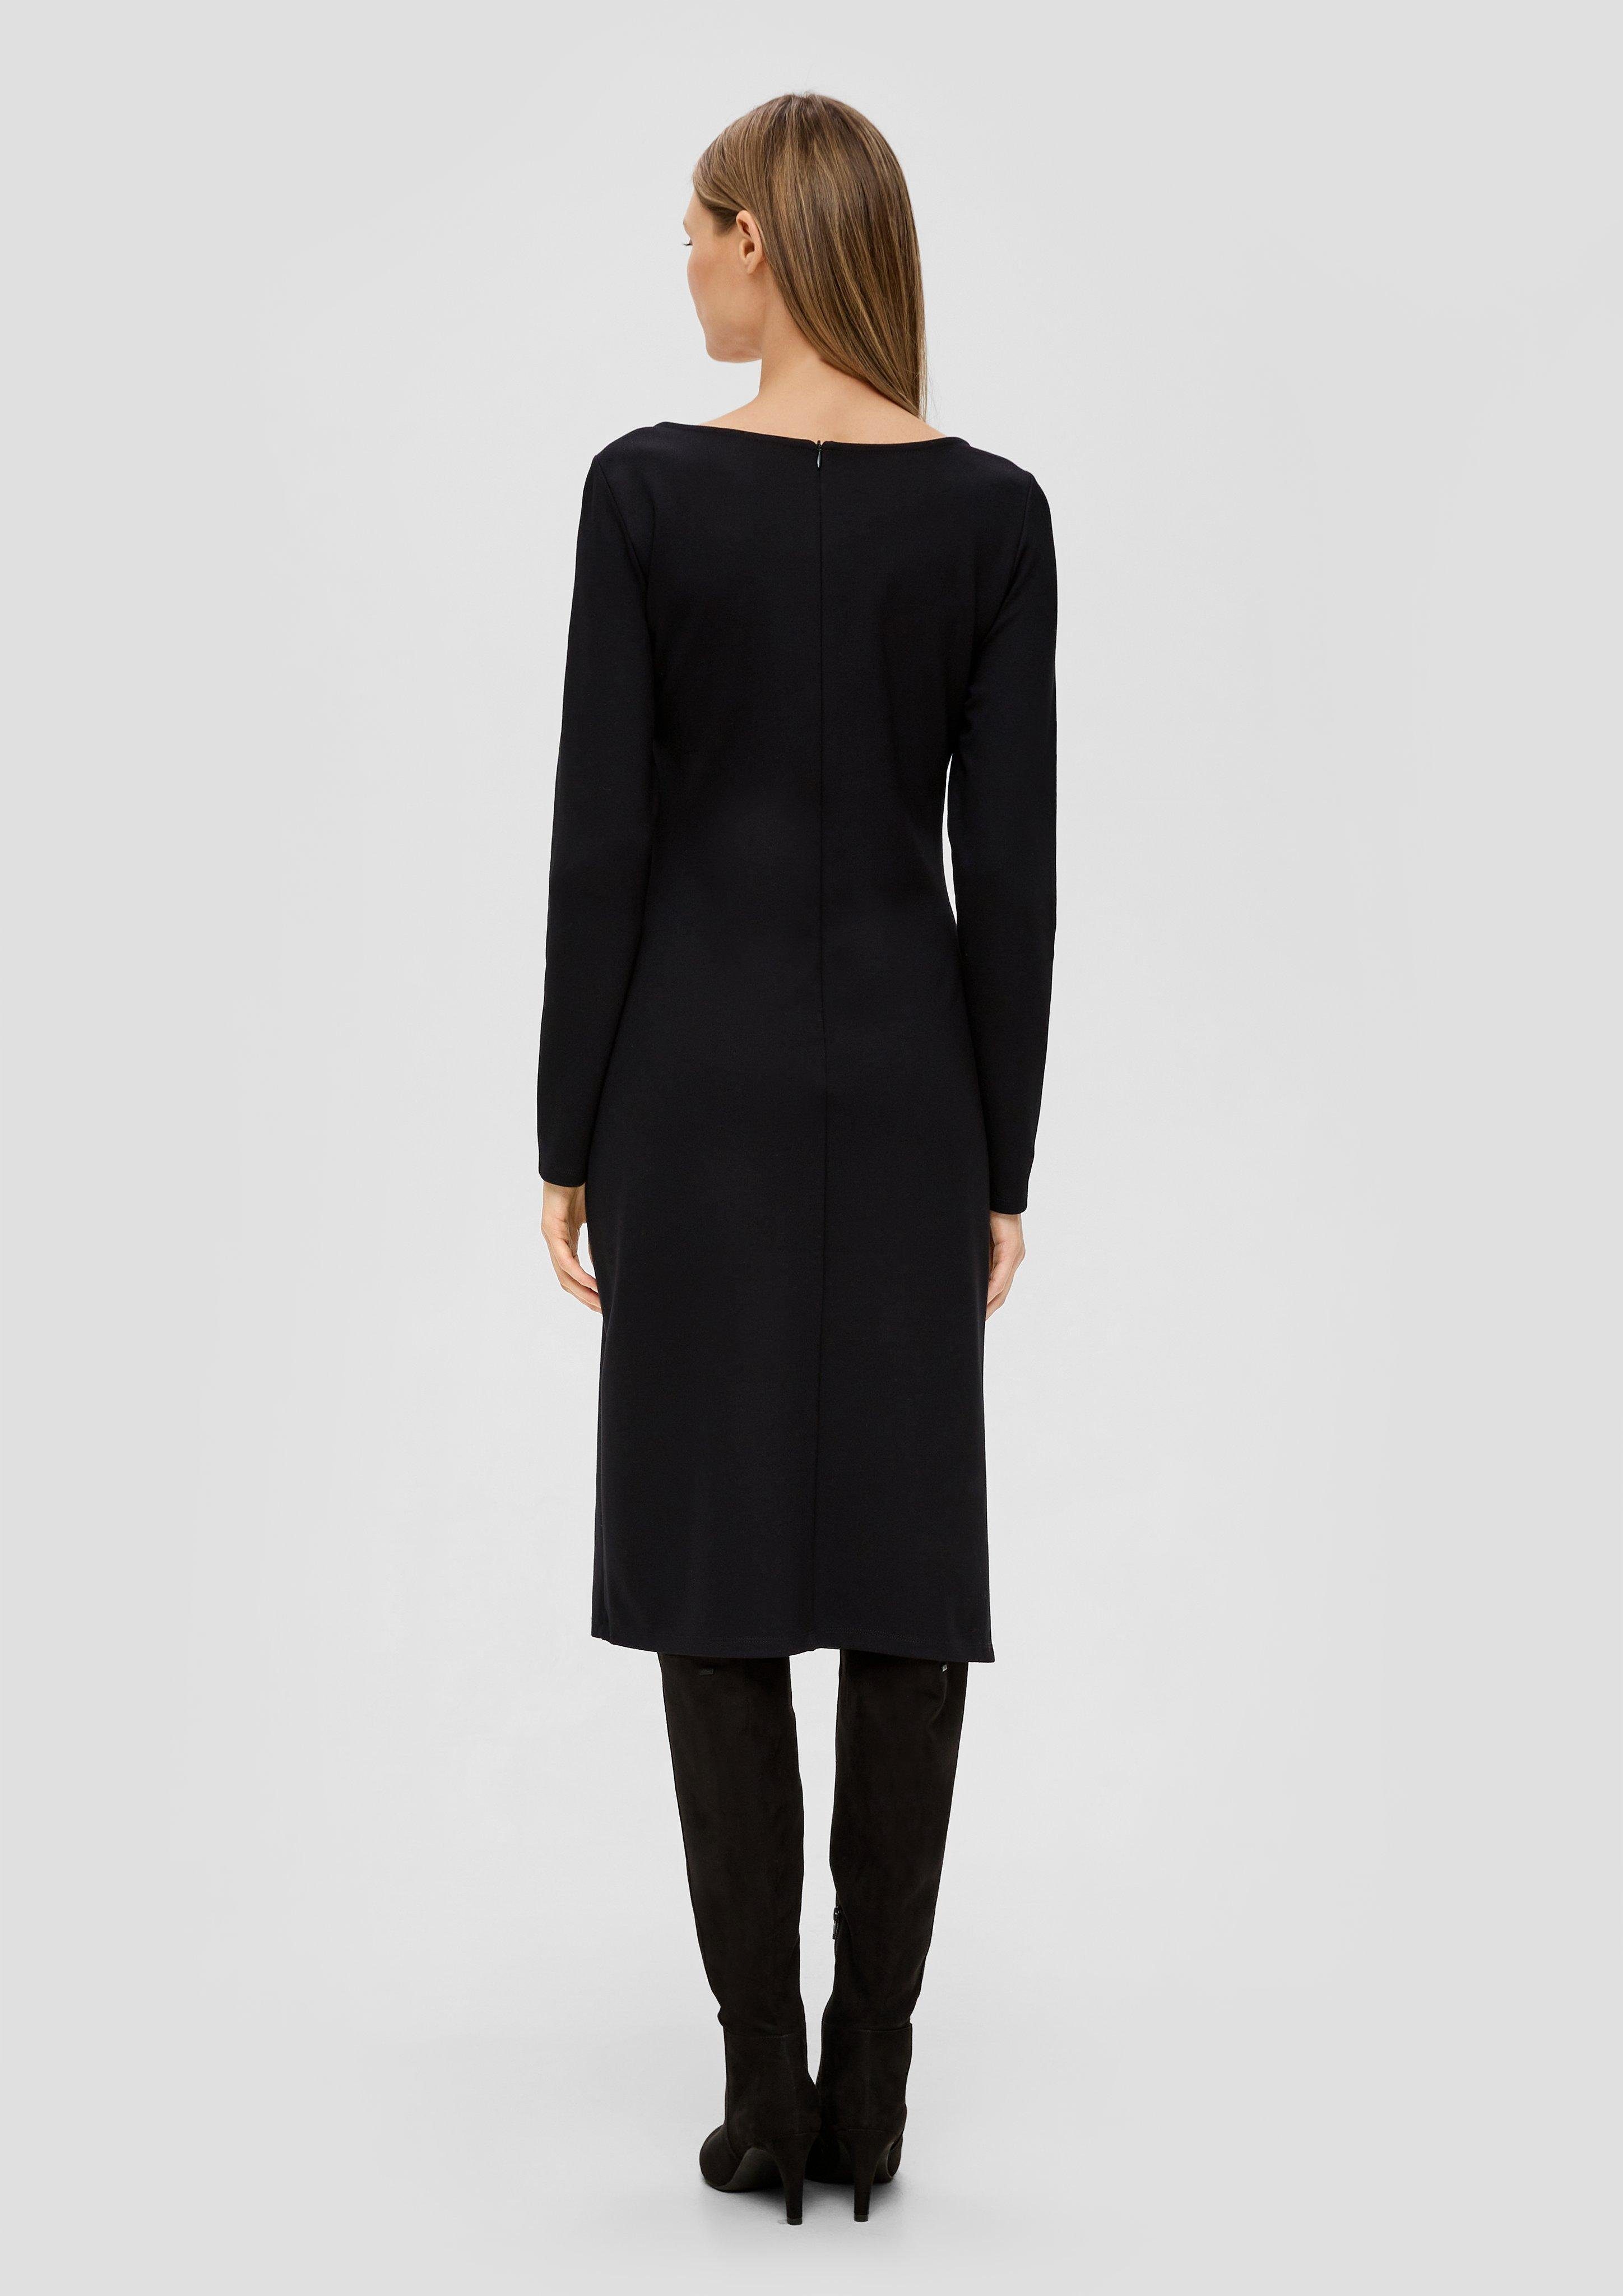 Jerseykleid aus Raffung Viskosemix s.Oliver schwarz BLACK Minikleid LABEL